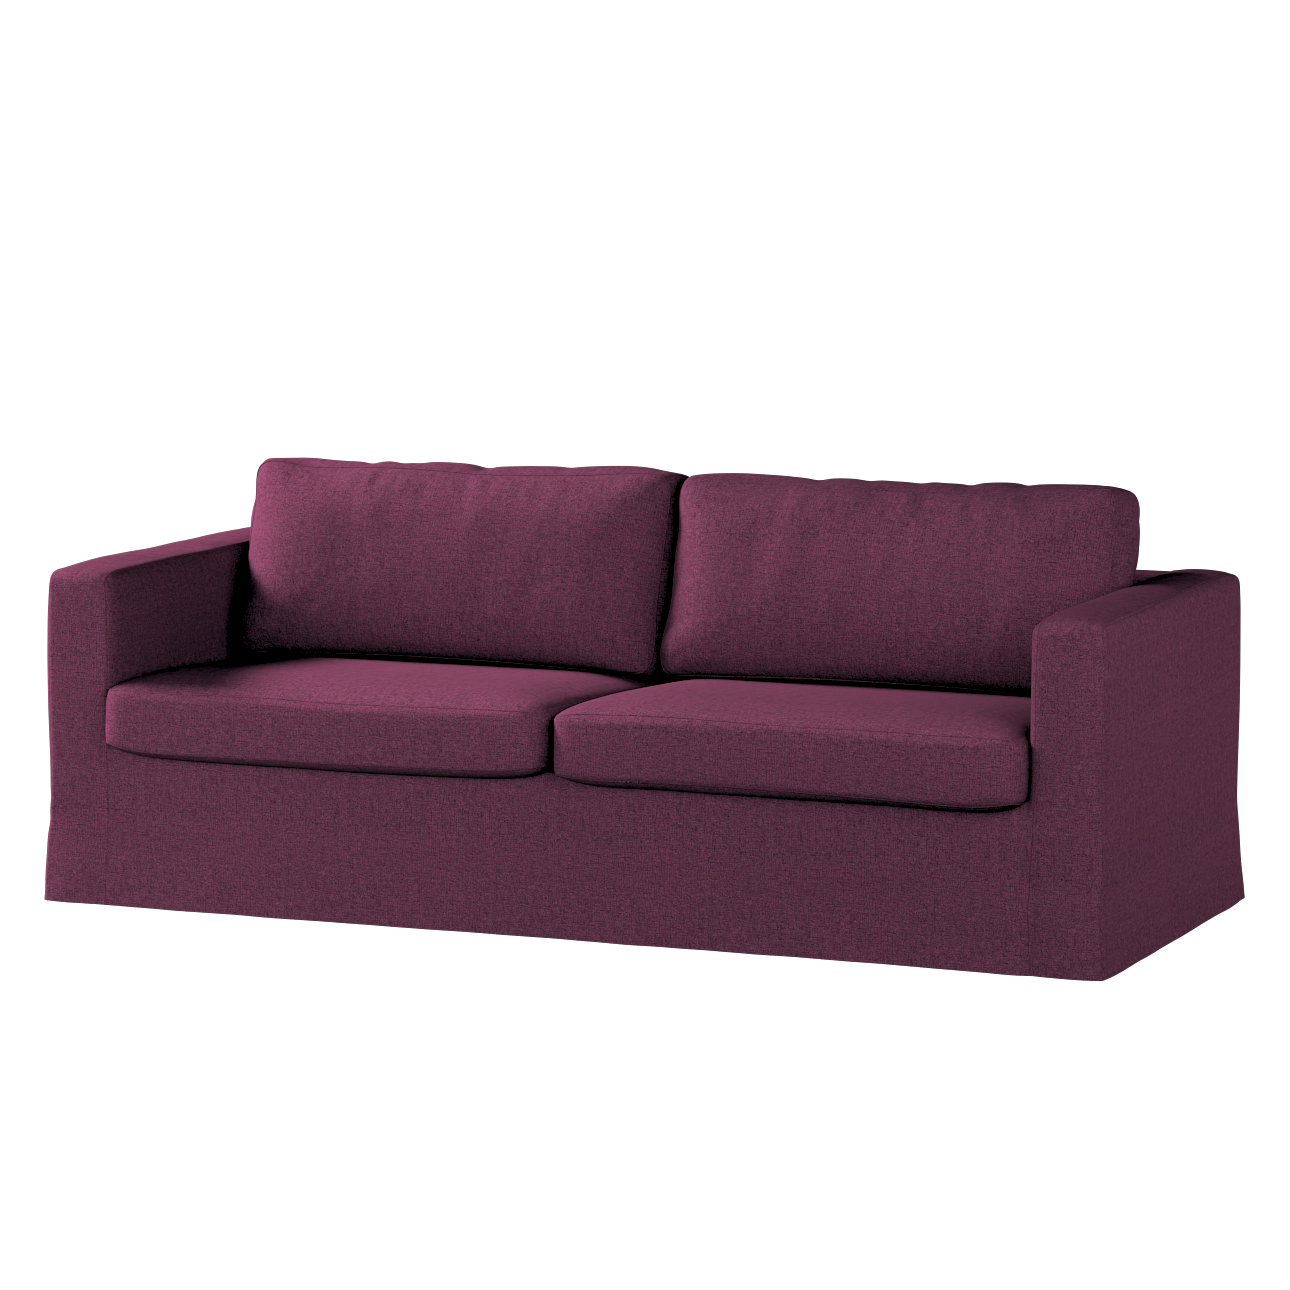 Bezug für Karlstad 3-Sitzer Sofa nicht ausklappbar, lang, pflaumenviolett, günstig online kaufen